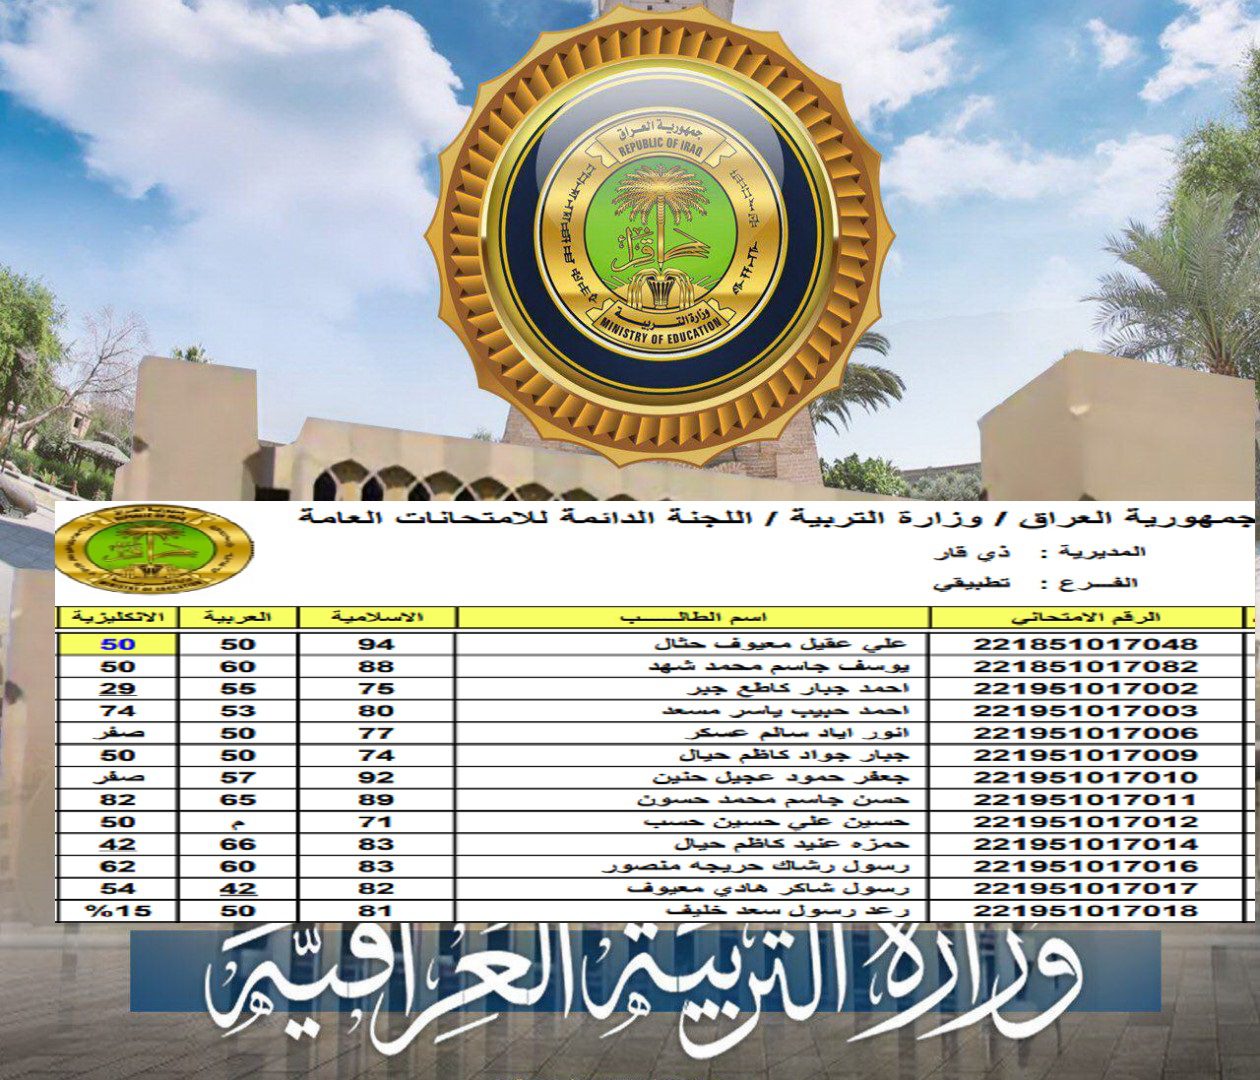 موقع وزارة التربية والتعليم العراقية - مدونة التقنية العربية